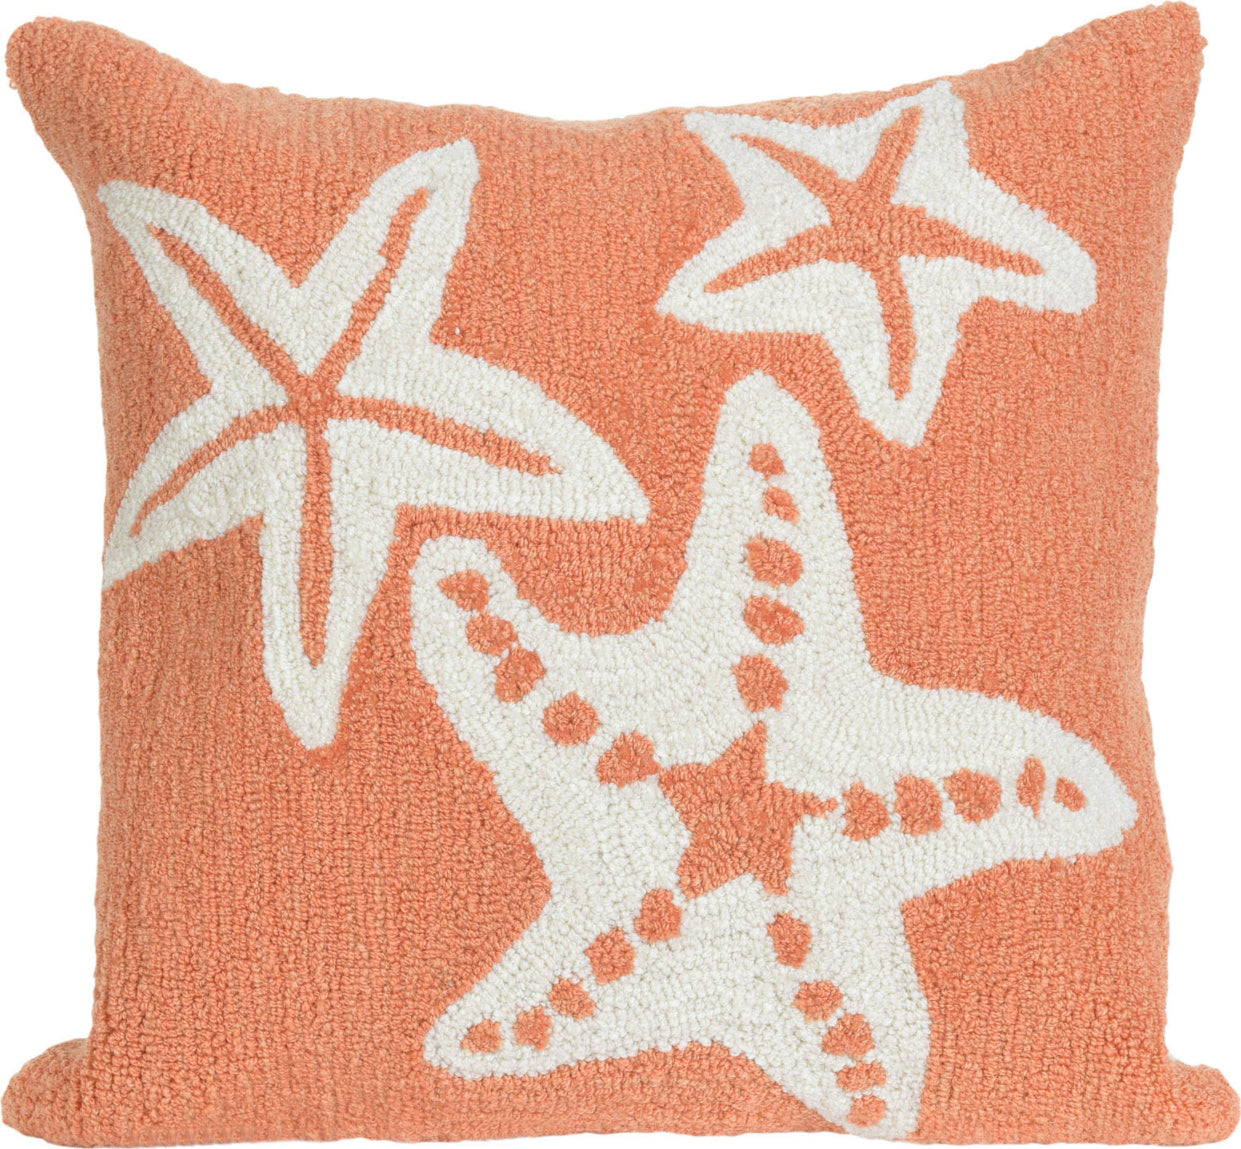 Trans Ocean Frontporch Starfish Orange by Liora Manne